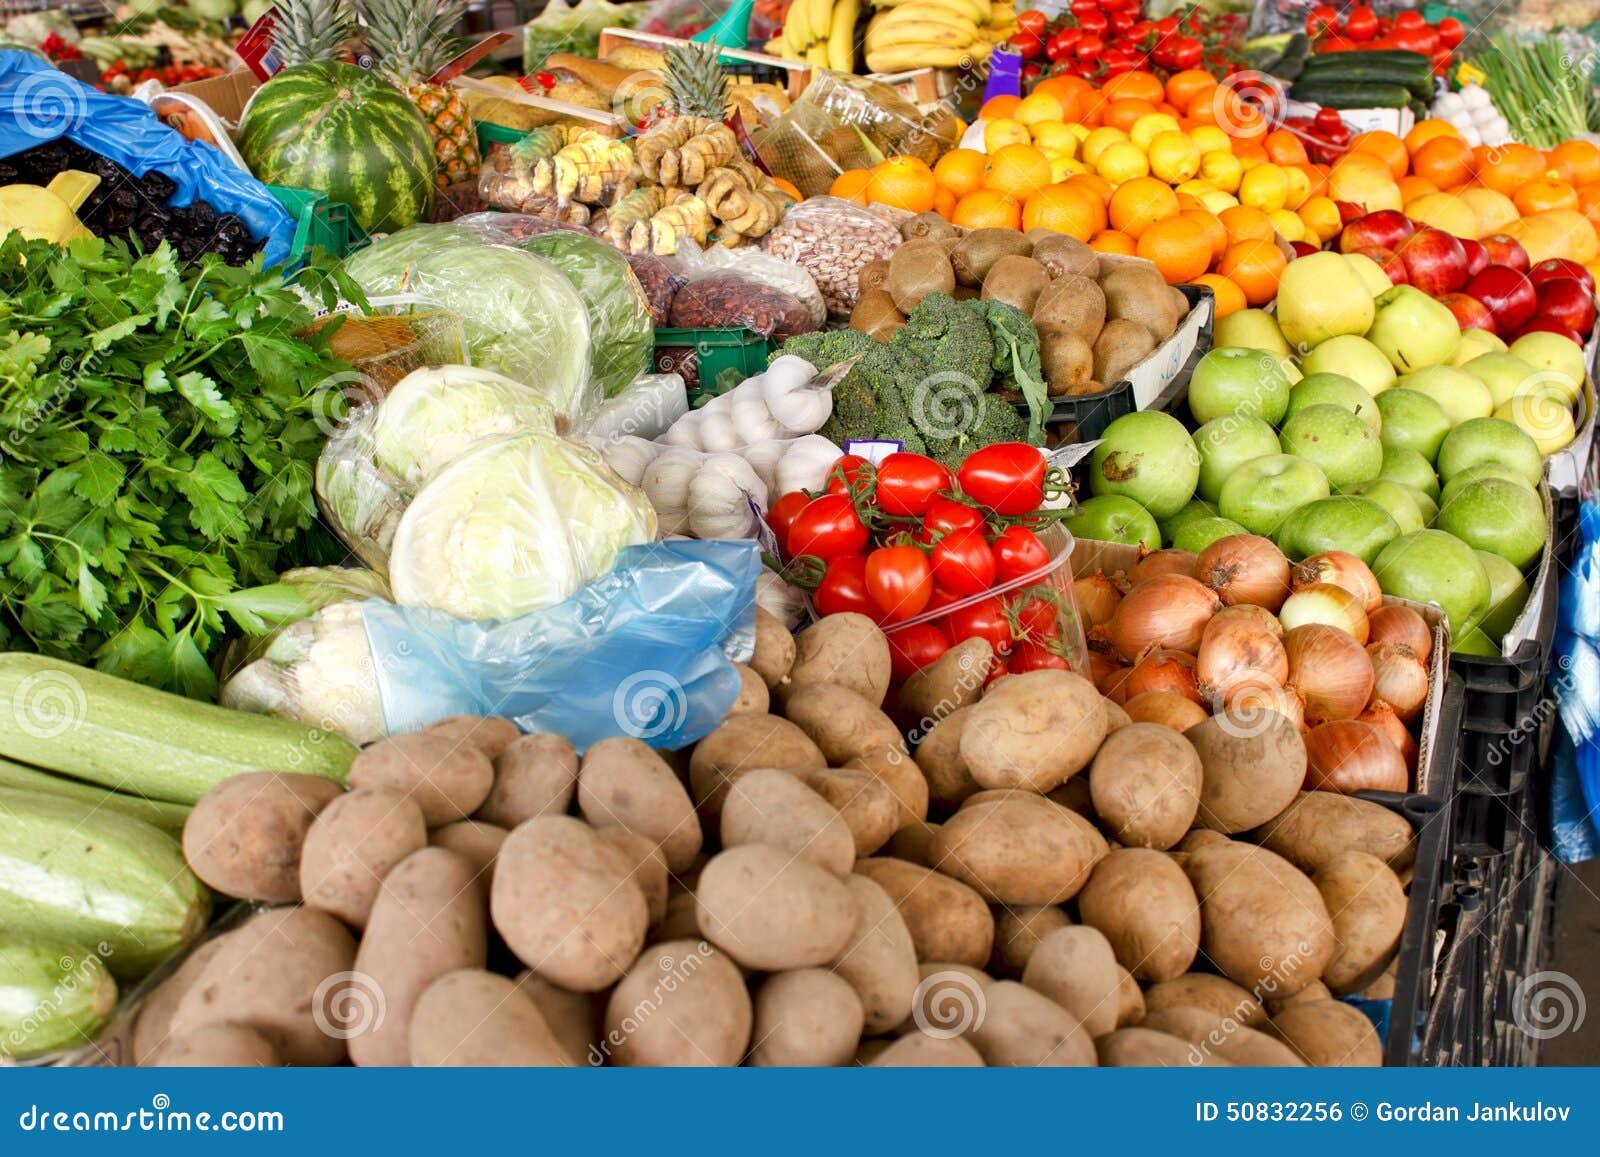 frutas y verduras organicas frescas en mercado